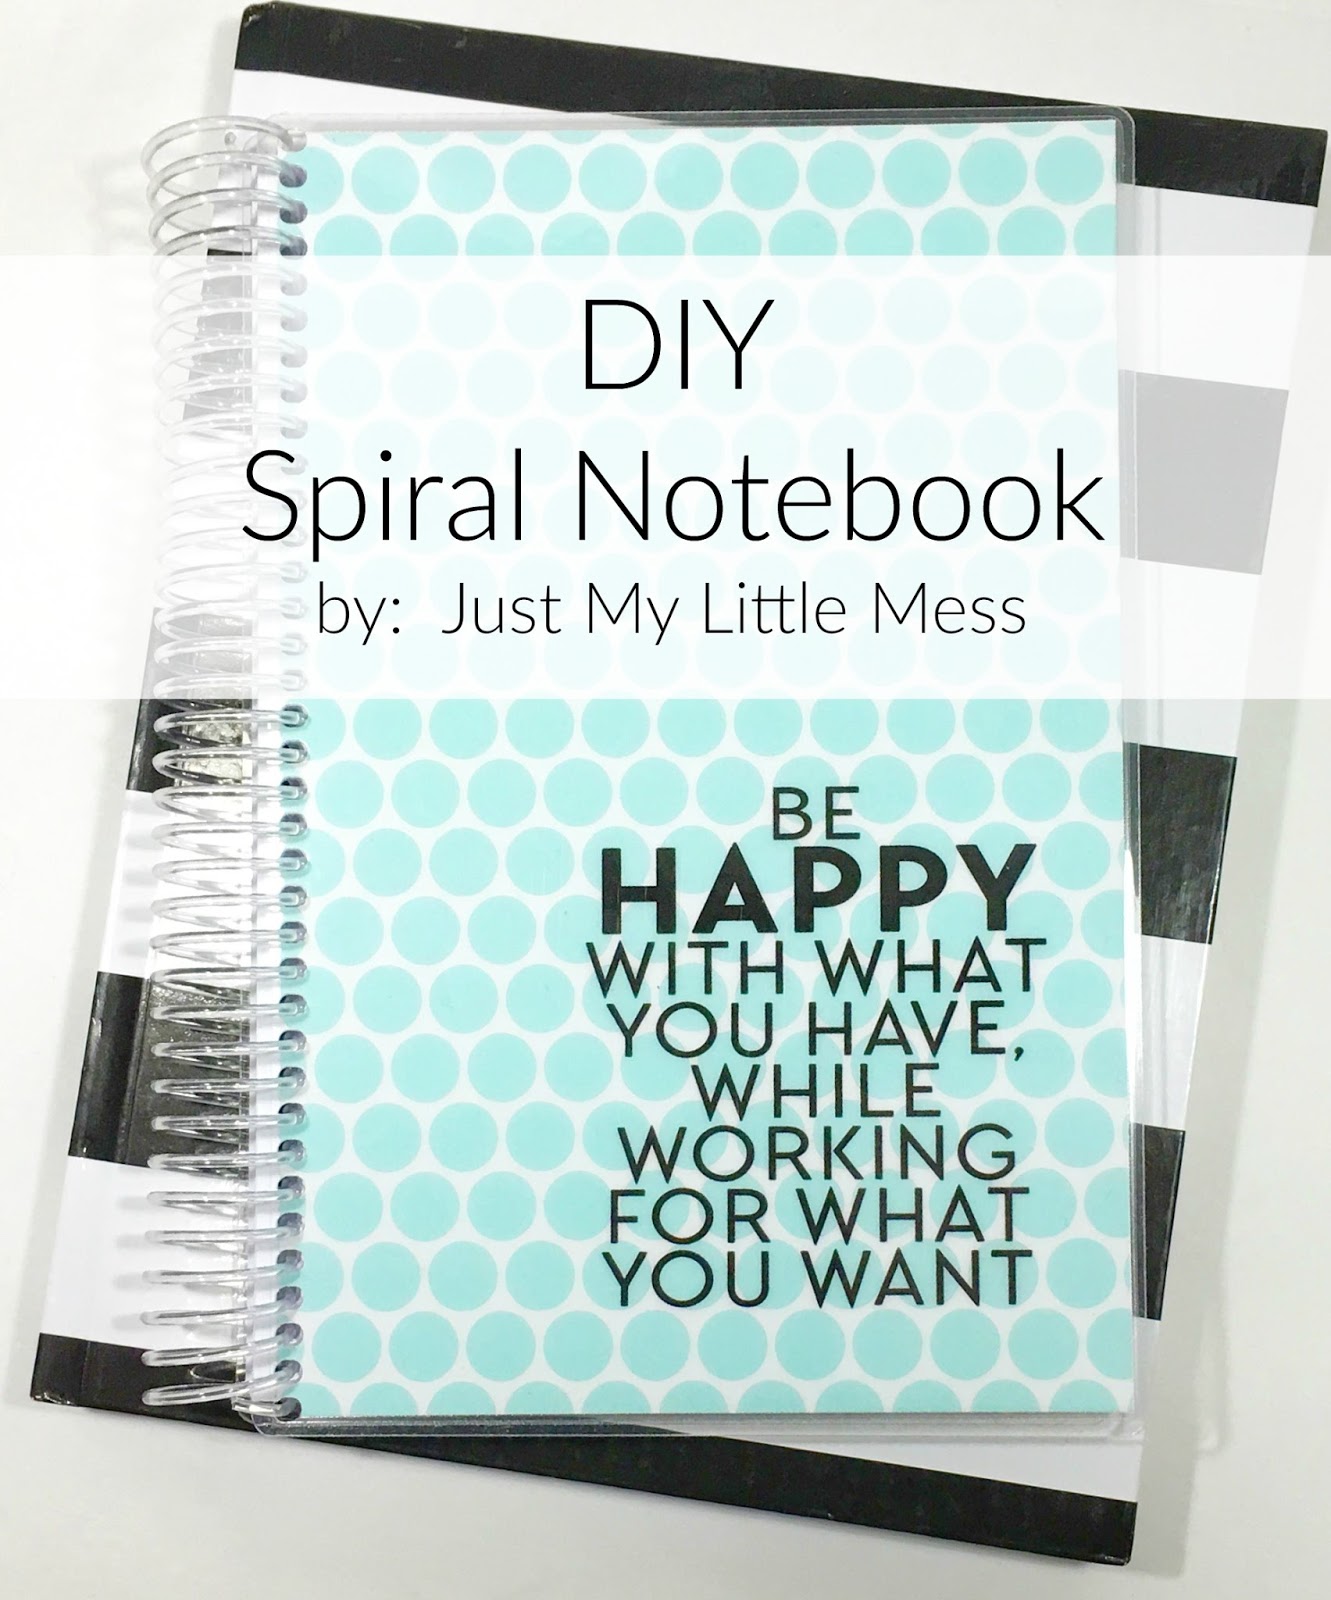 DIY Spiral Notebook